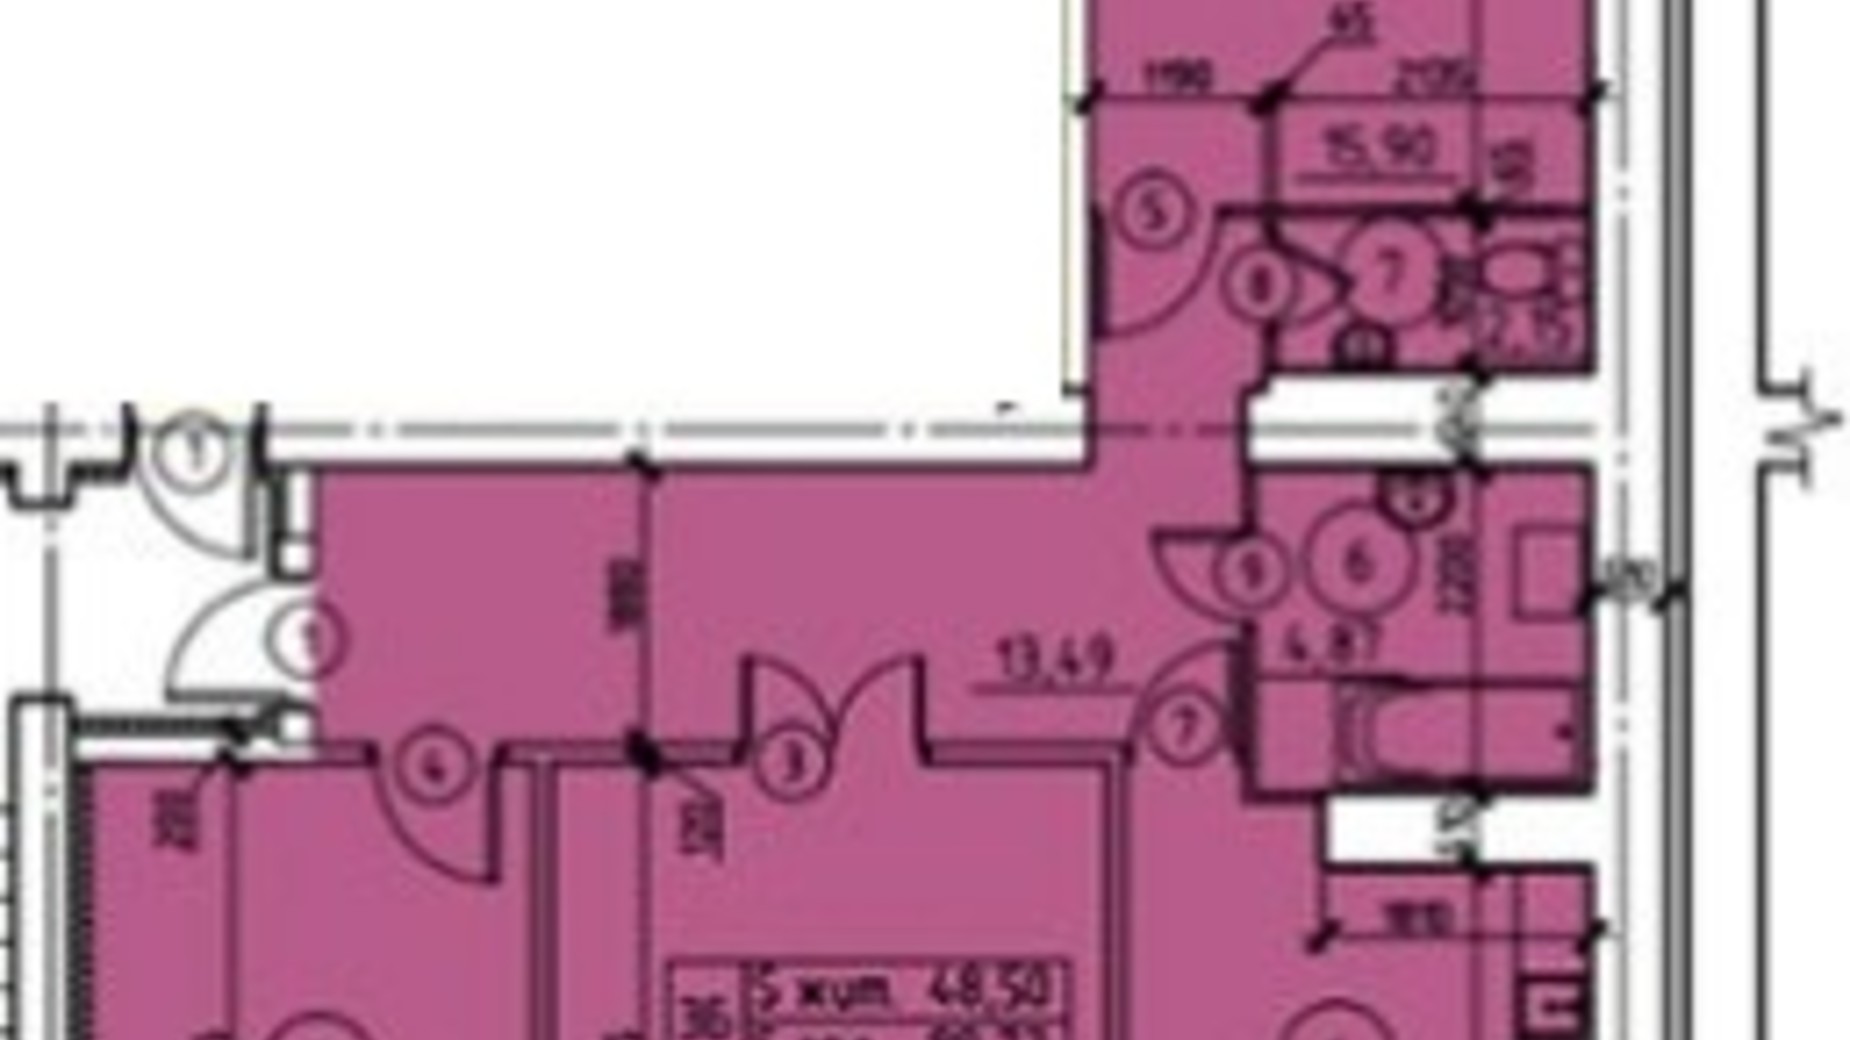 Планировка 3-комнатной квартиры в ЖК пр-т М. Лушпы, корпус 22/1 77.74 м², фото 245048